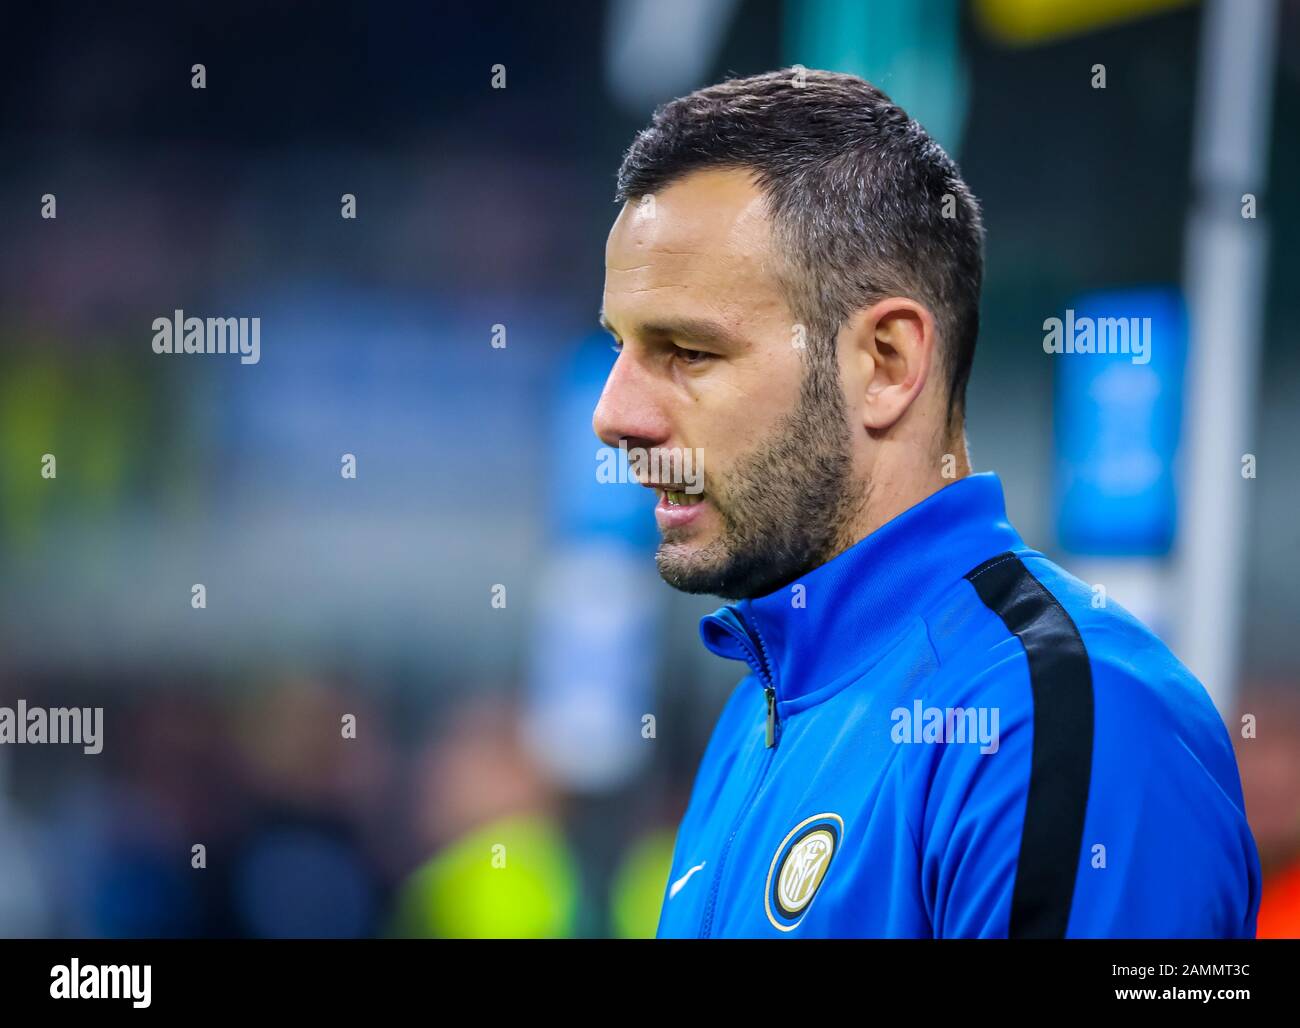 Samir handanovic di fc internazionale durante Inter vs Atalanta, Milano, Italia, 11 gennaio 2020, Campionato Italiano Calcio Serie A Men Foto Stock